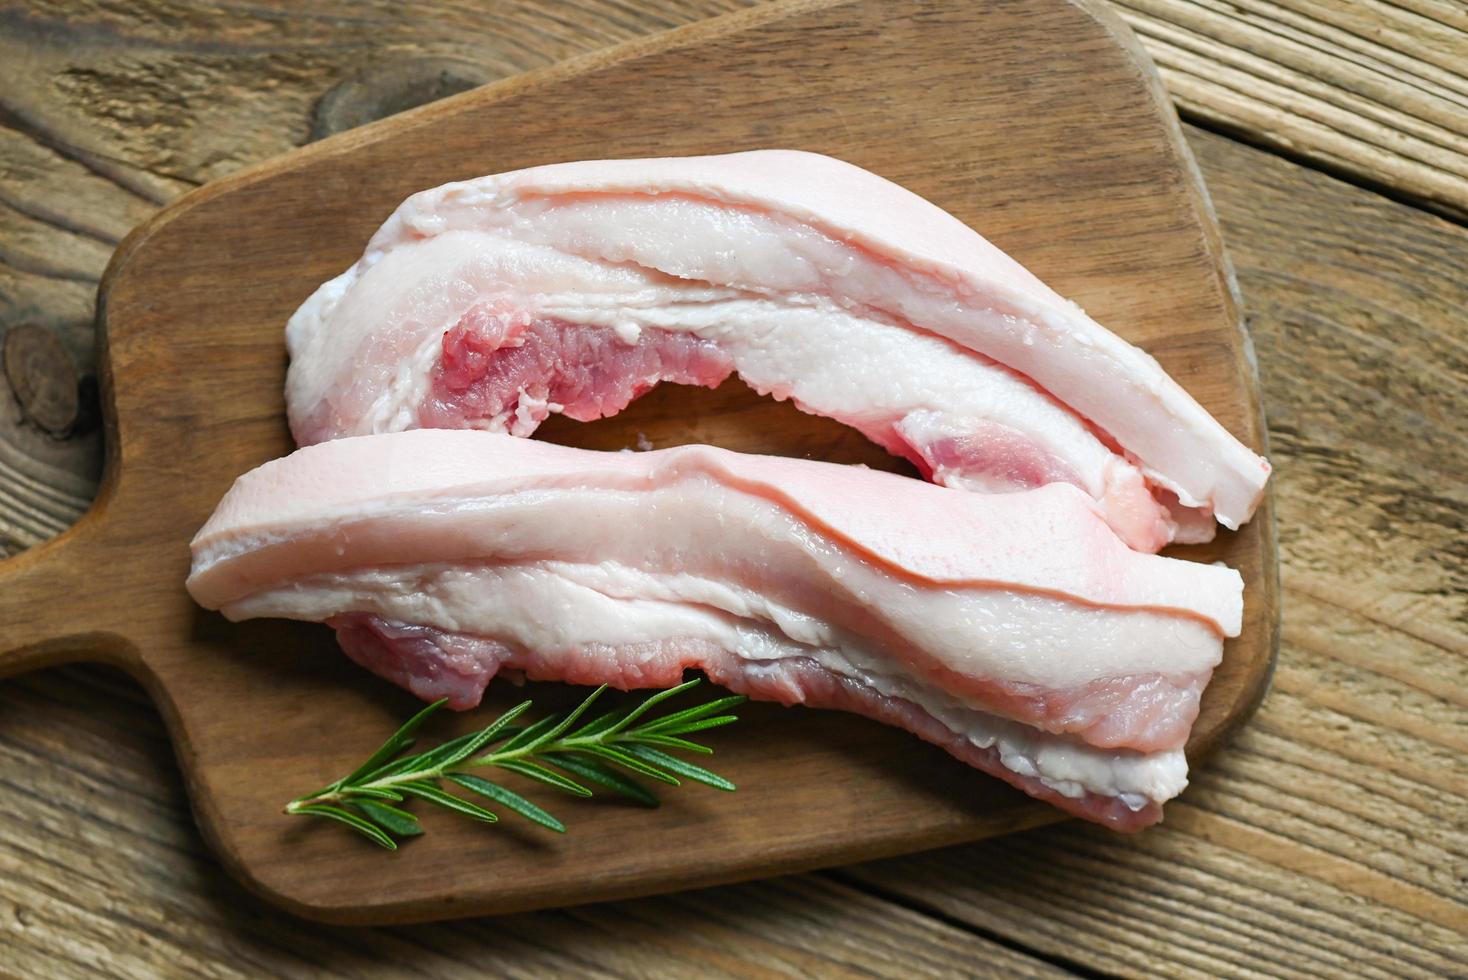 vers rauw buikspek varkensvlees vlees voor Koken voedsel, varkensvlees Aan houten bord met rozemarijn, varkensvlees huid varken huid foto